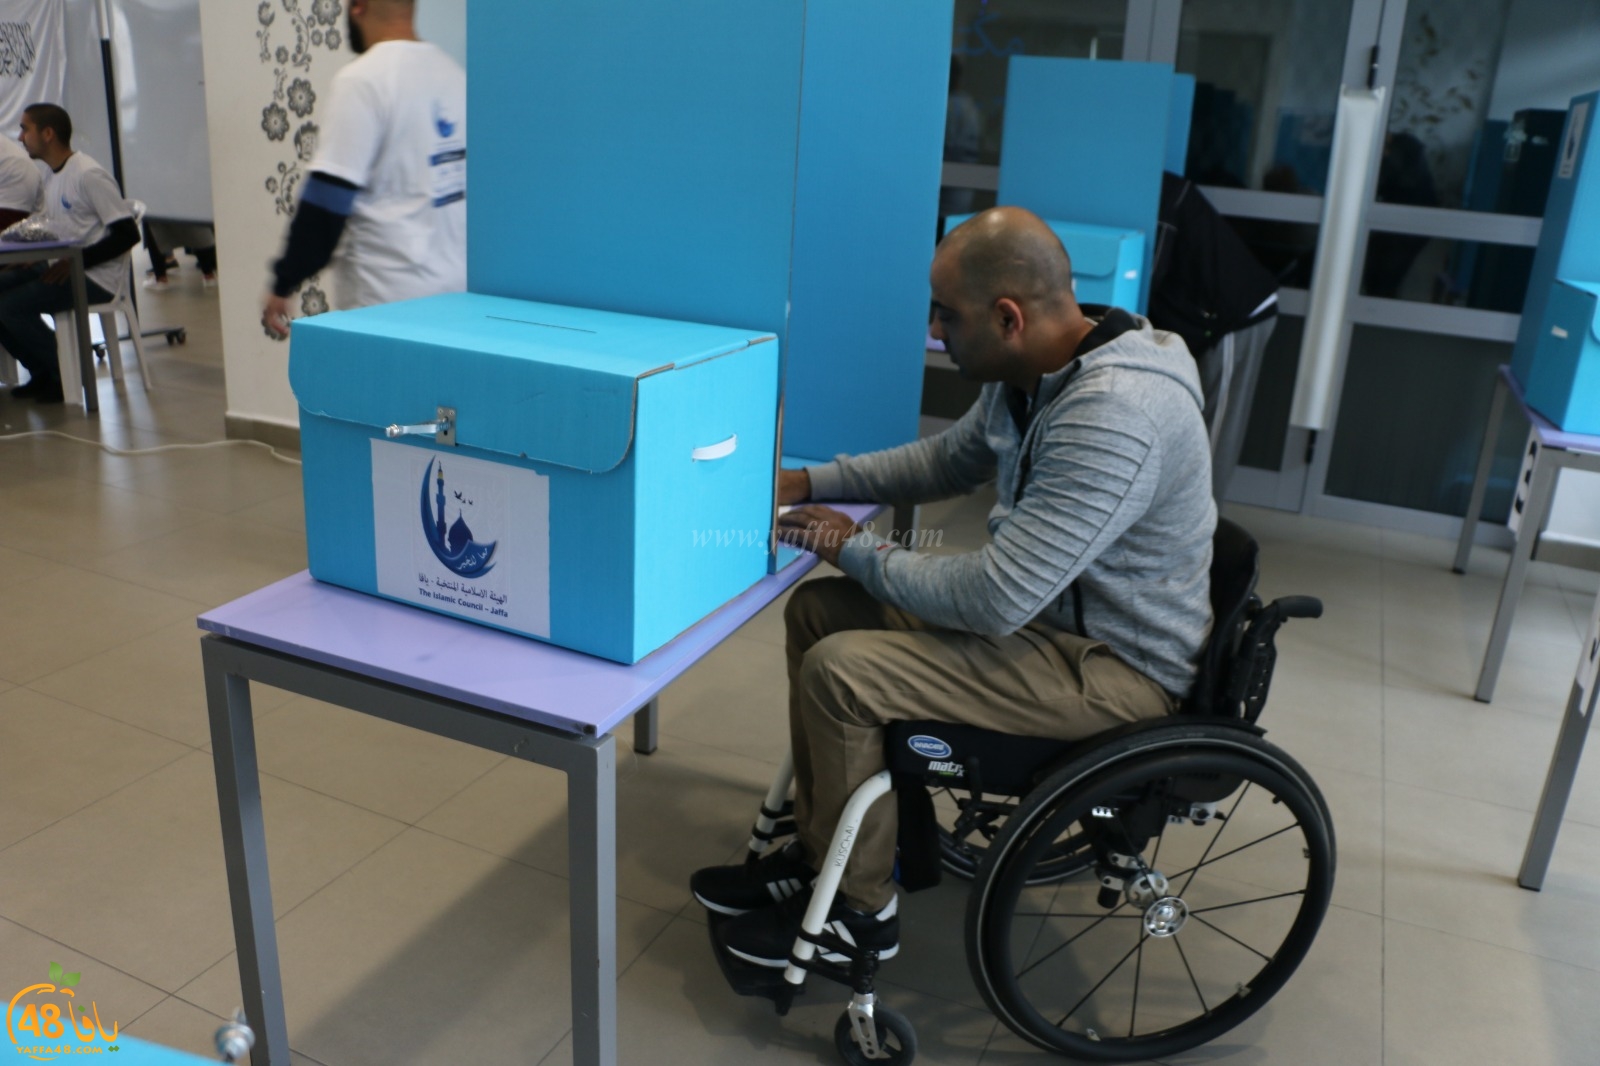  بالصور: لجنة الانتخابات تُوفّر صندوق متنقل لخدمة العاجزين عن الوصول لمقر الانتخابات